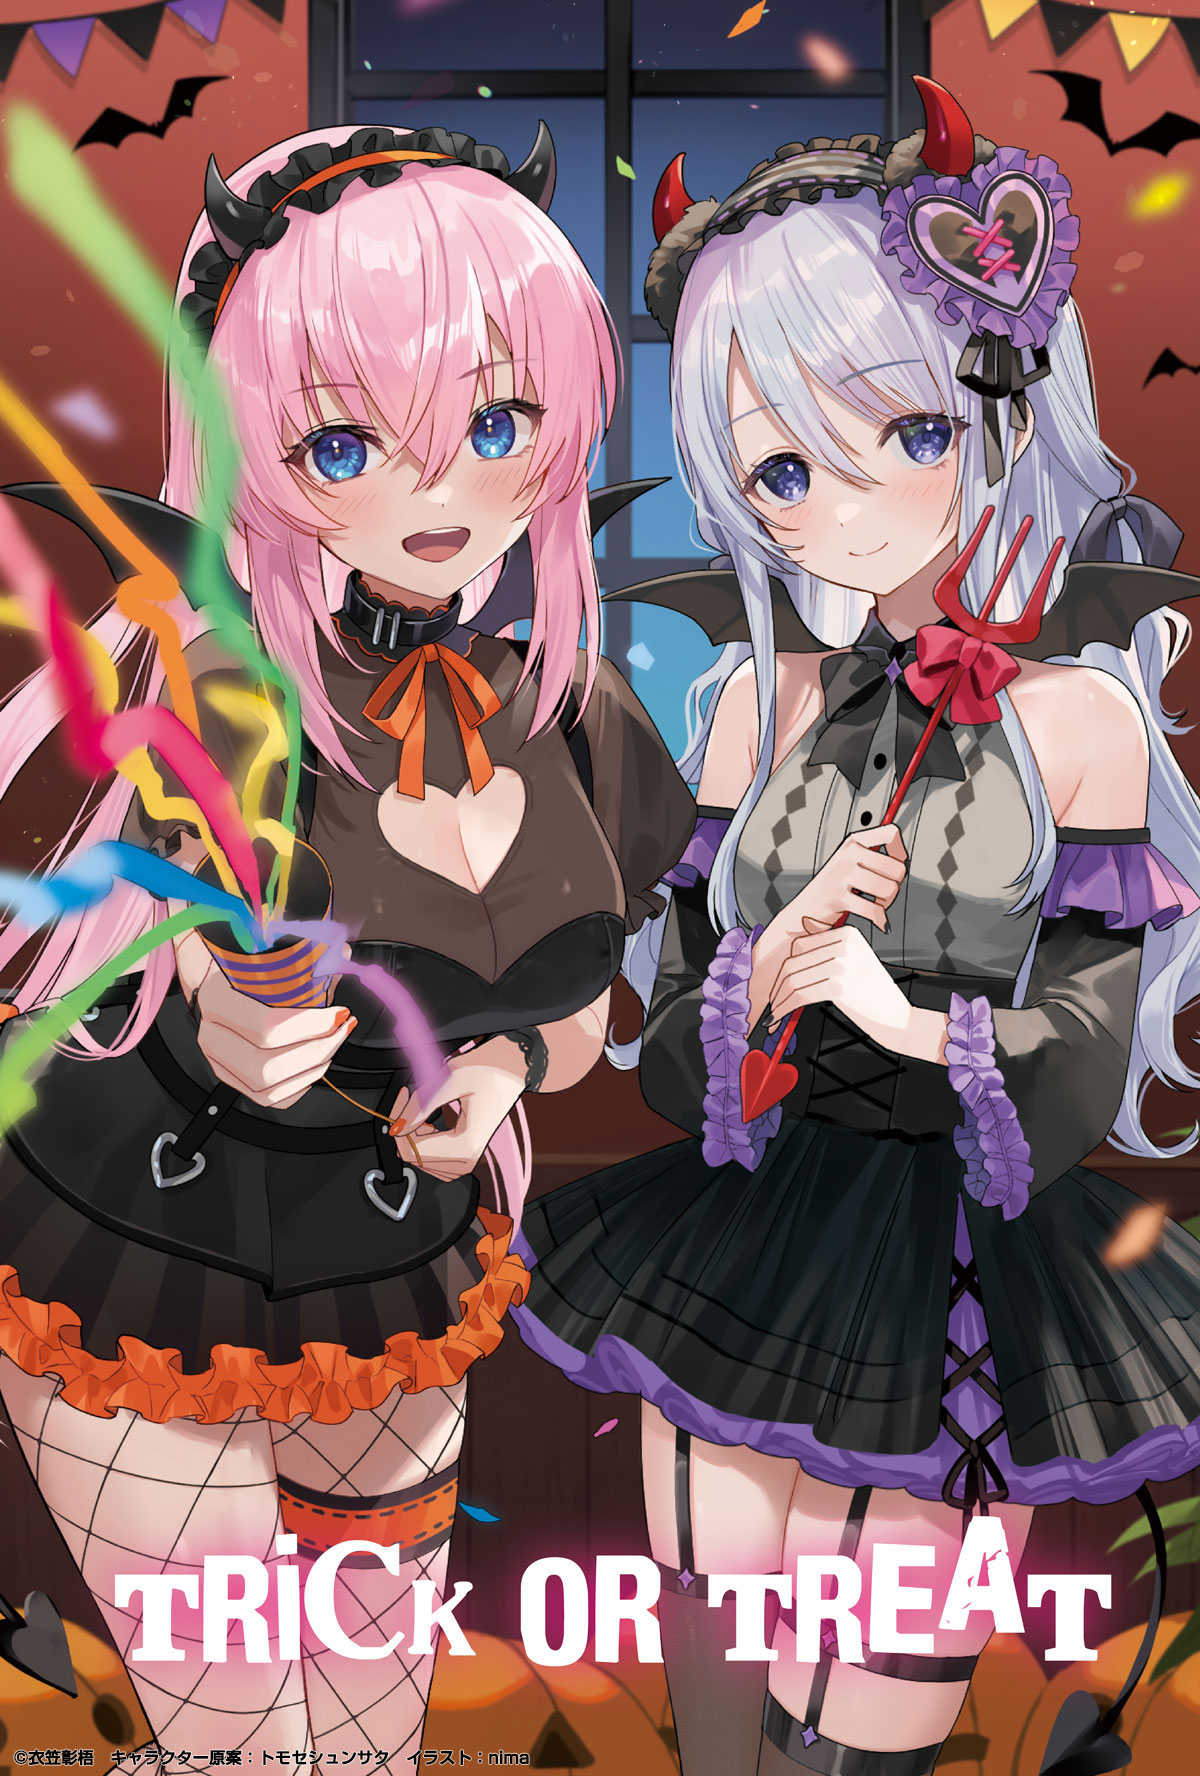 chèn hình ảnh của ichinose và hiyori từ lớp học lừa hoặc chiêu đãi ưu tú áp phích quảng cáo halloween